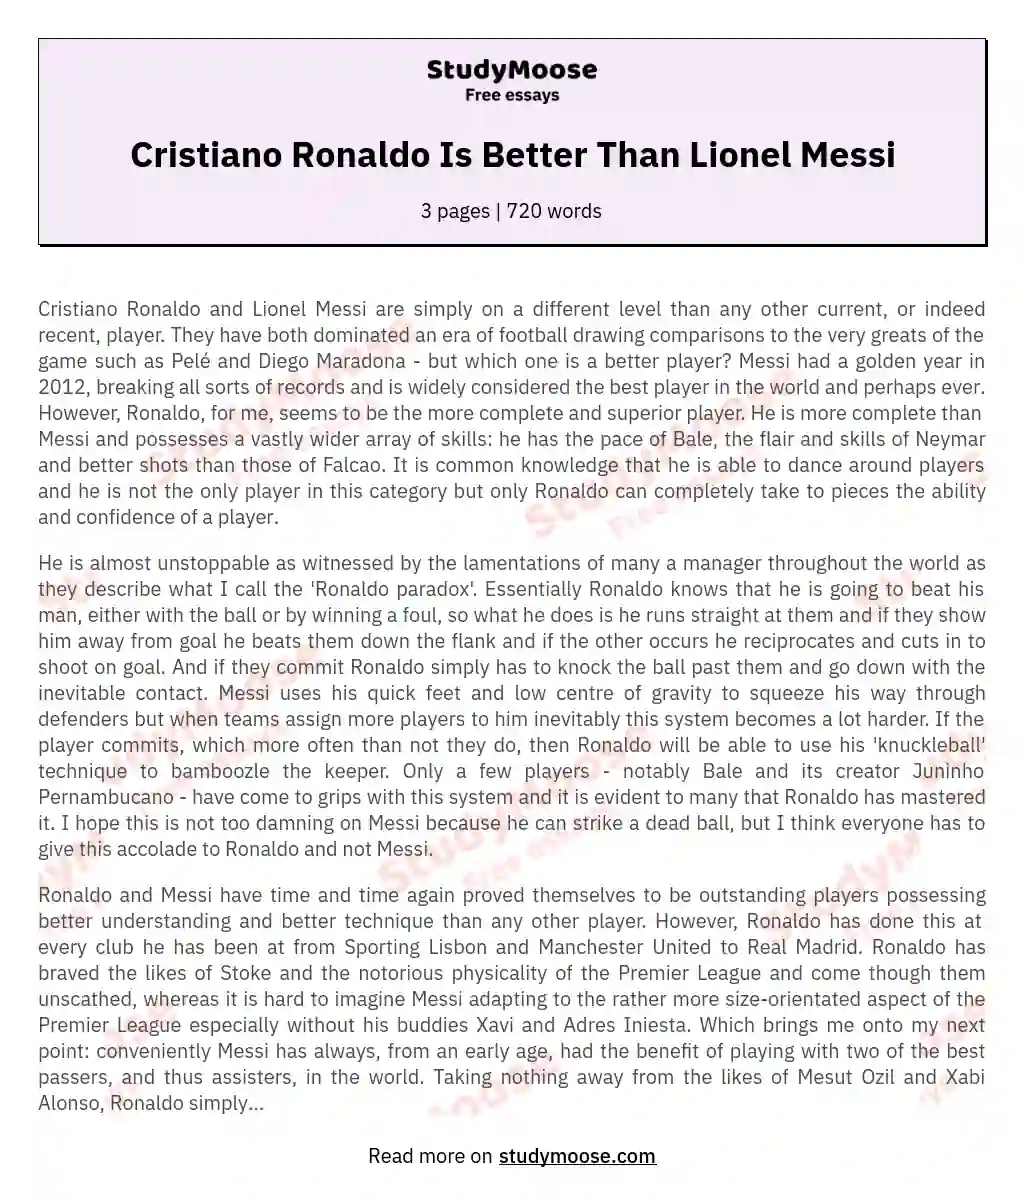 Cristiano Ronaldo Is Better Than Lionel Messi essay